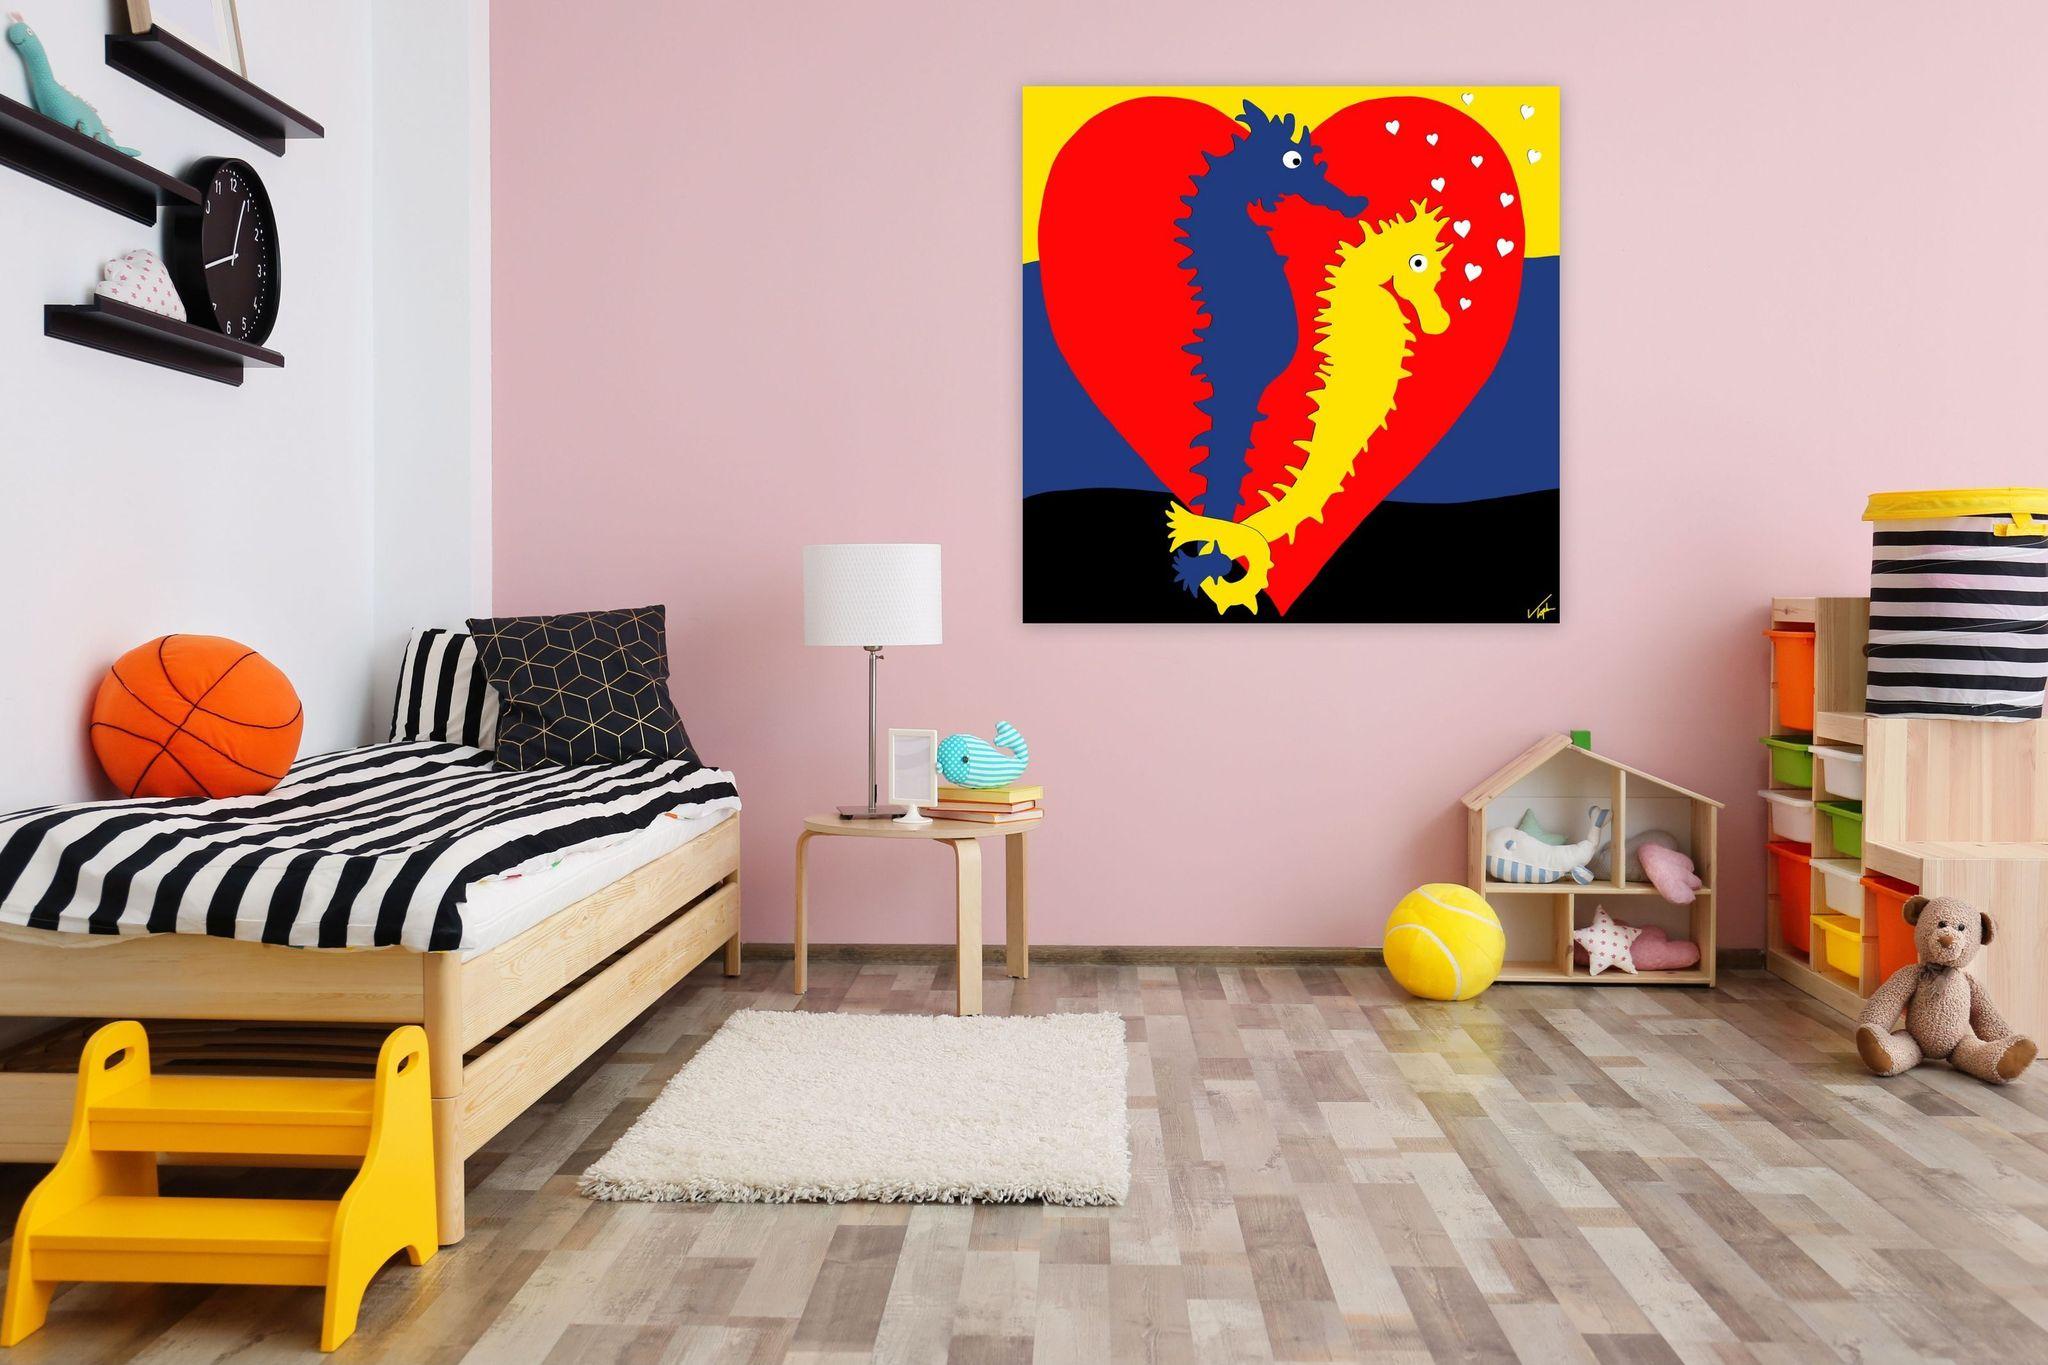 Dieser farbenfrohe Druck des digitalen Gemäldes von Topher Straus ist ein fröhlicher, moderner Tierdruck. Romantisch und farbenfroh, inspiriert von seiner eigenen Erkundung der Natur und einem starken Wunsch nach Erhaltung der Umwelt, verfolgen